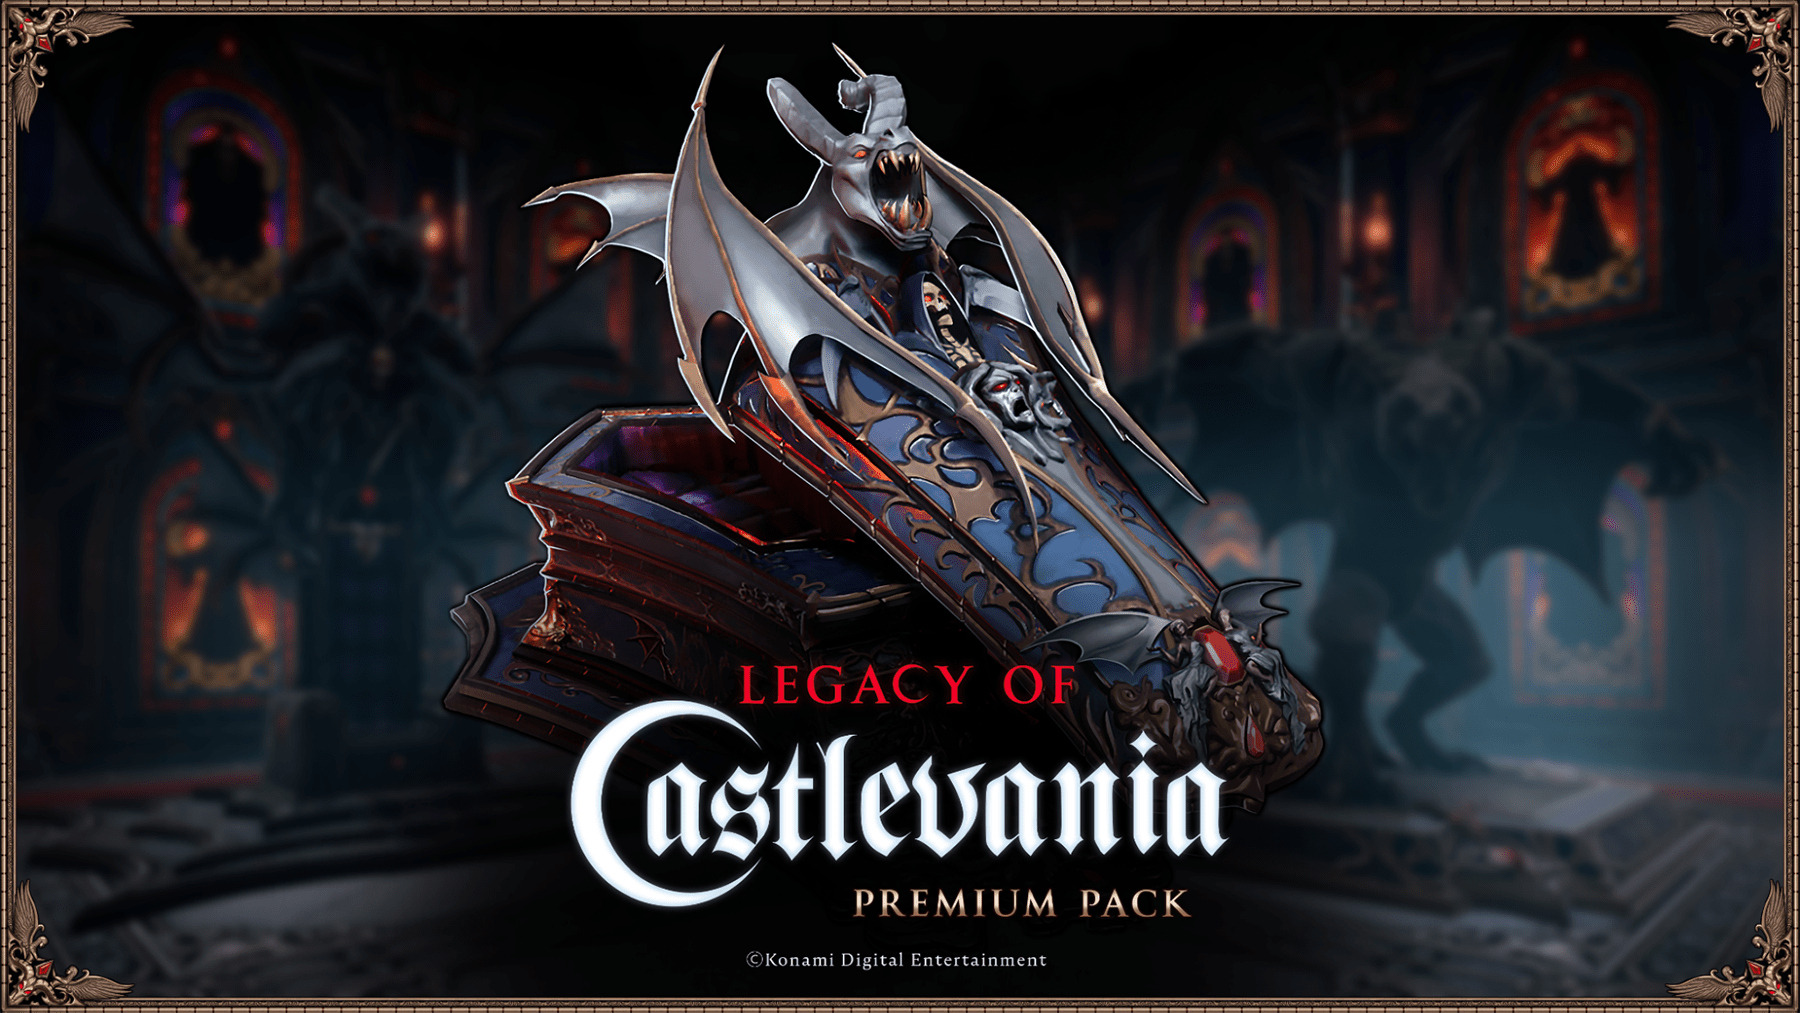 Il lancio della collaborazione con V Rising - Legacy of Castlevania avverrà l'8 maggio.